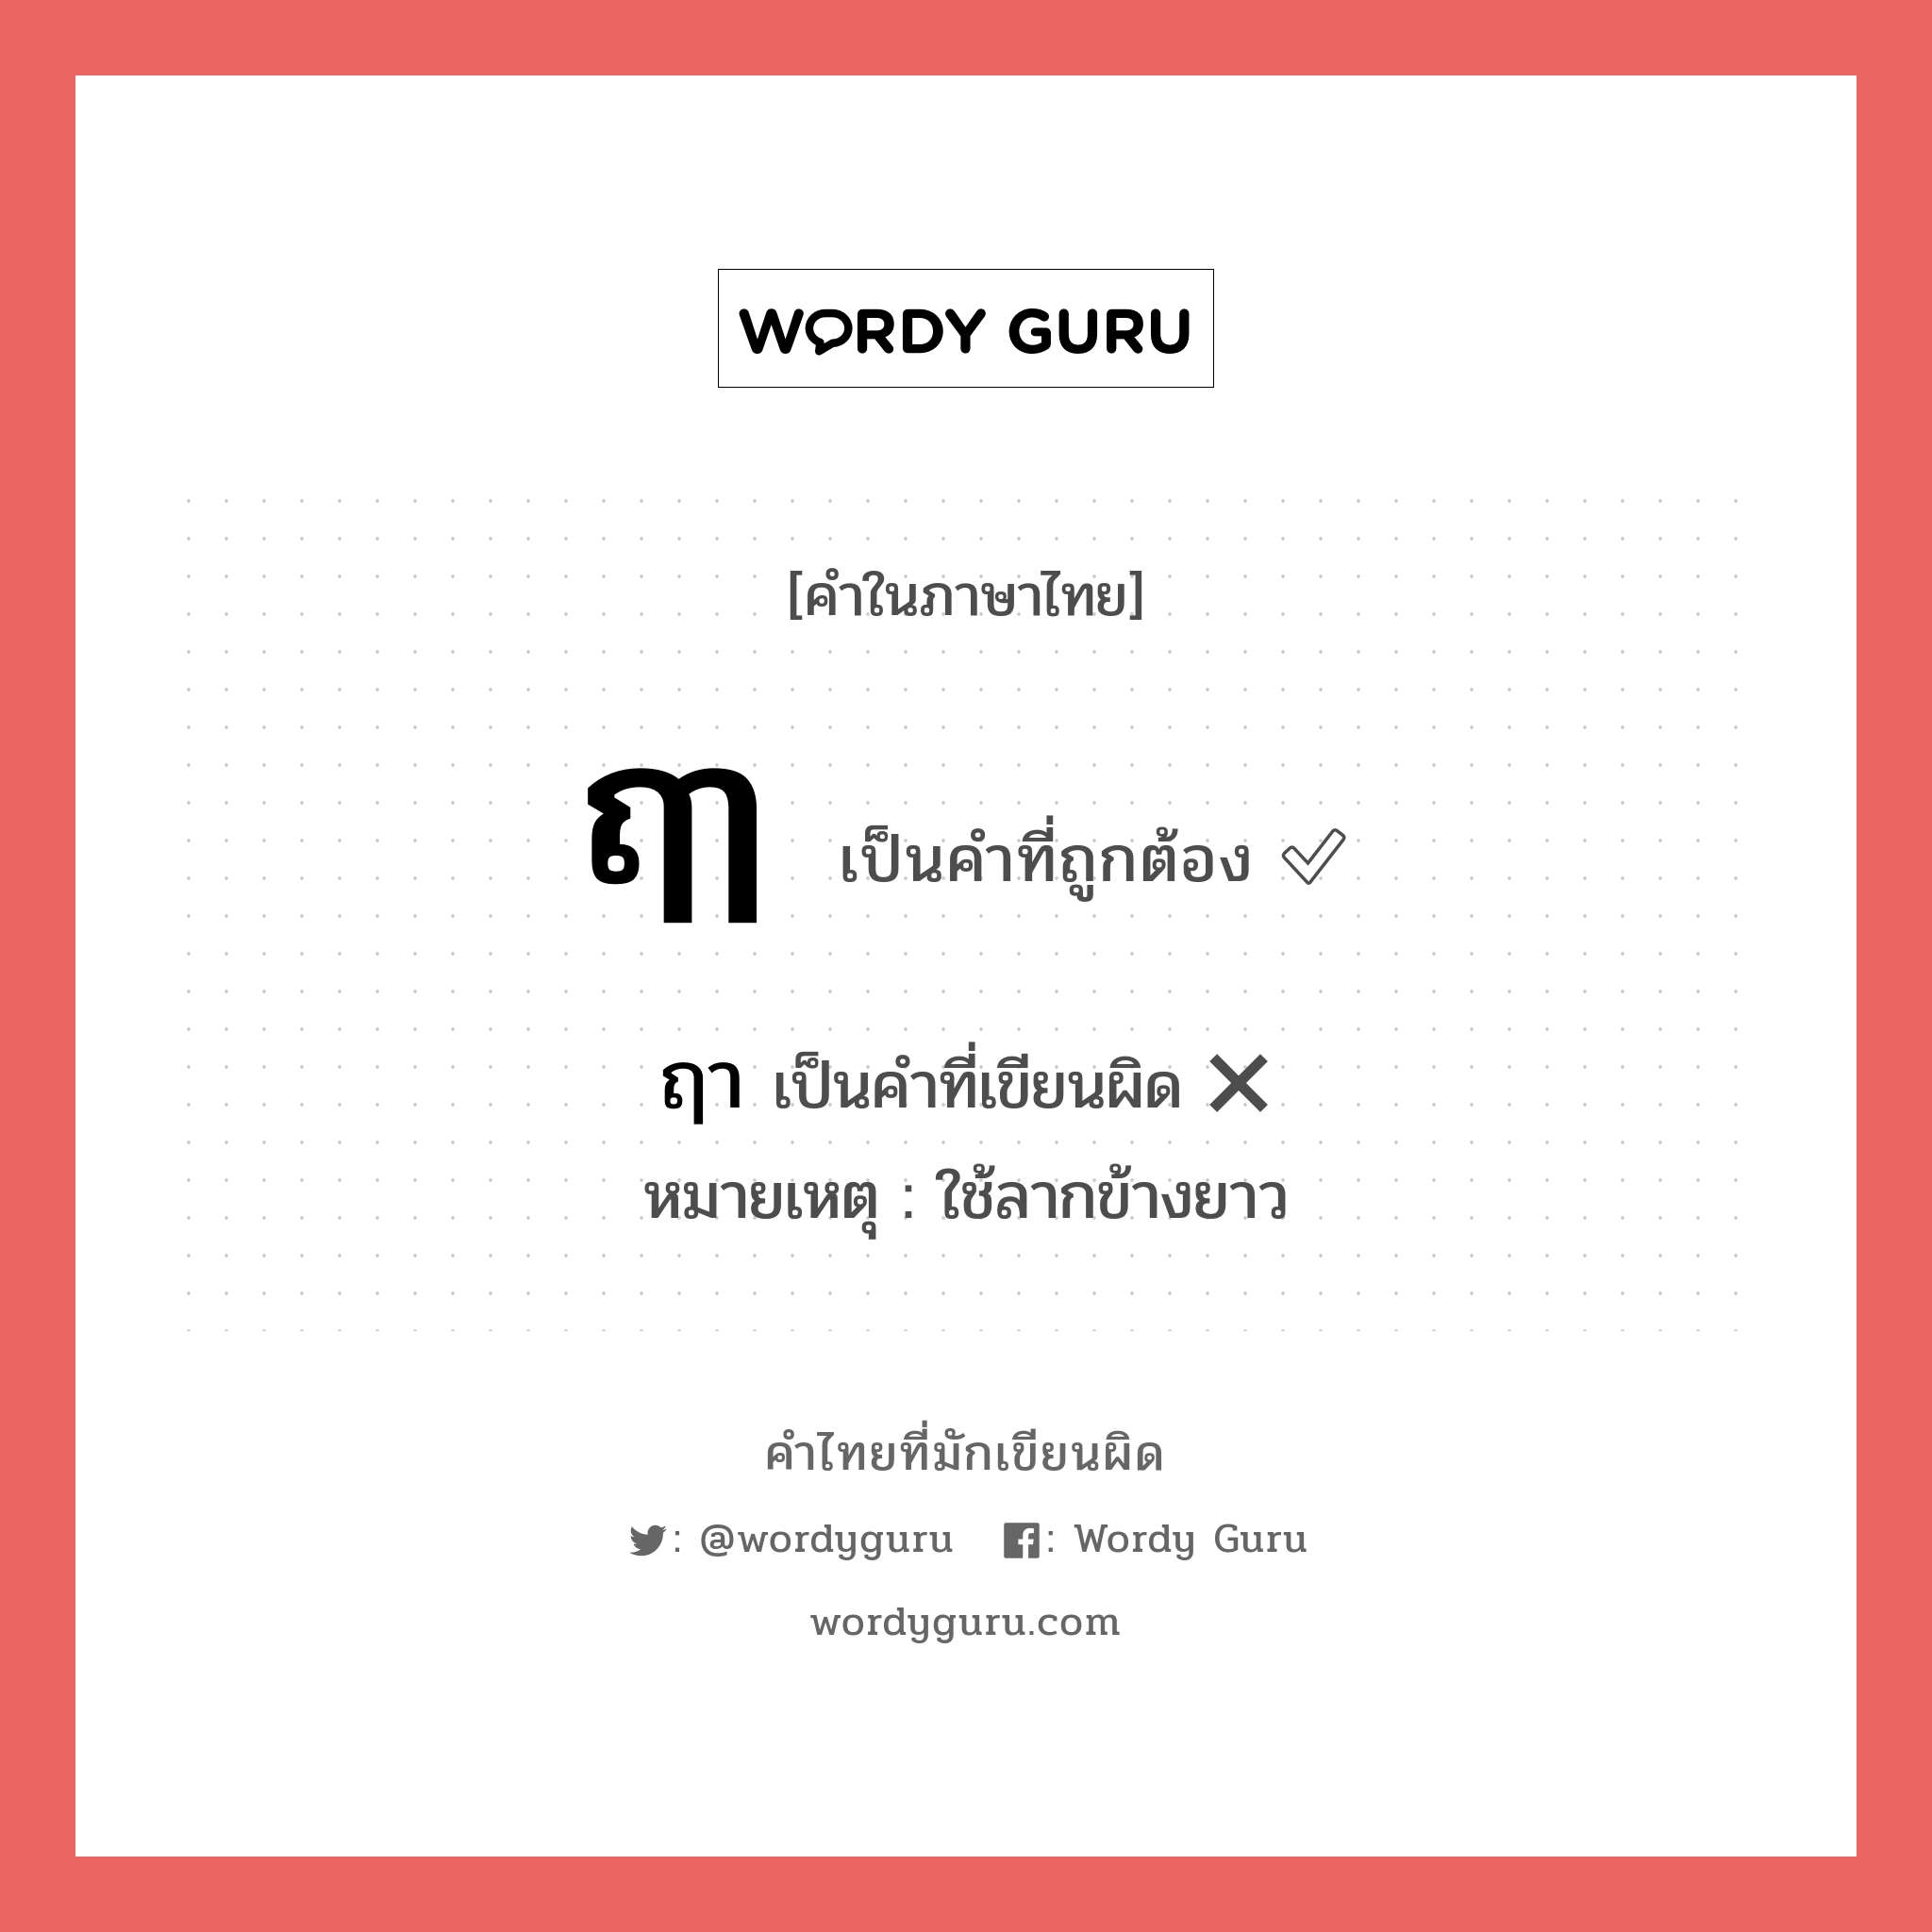 ฤๅ หรือ ฤา คำไหนเขียนถูก?, คำในภาษาไทยที่มักเขียนผิด ฤๅ คำที่ผิด ❌ ฤา หมายเหตุ ใช้ลากข้างยาว